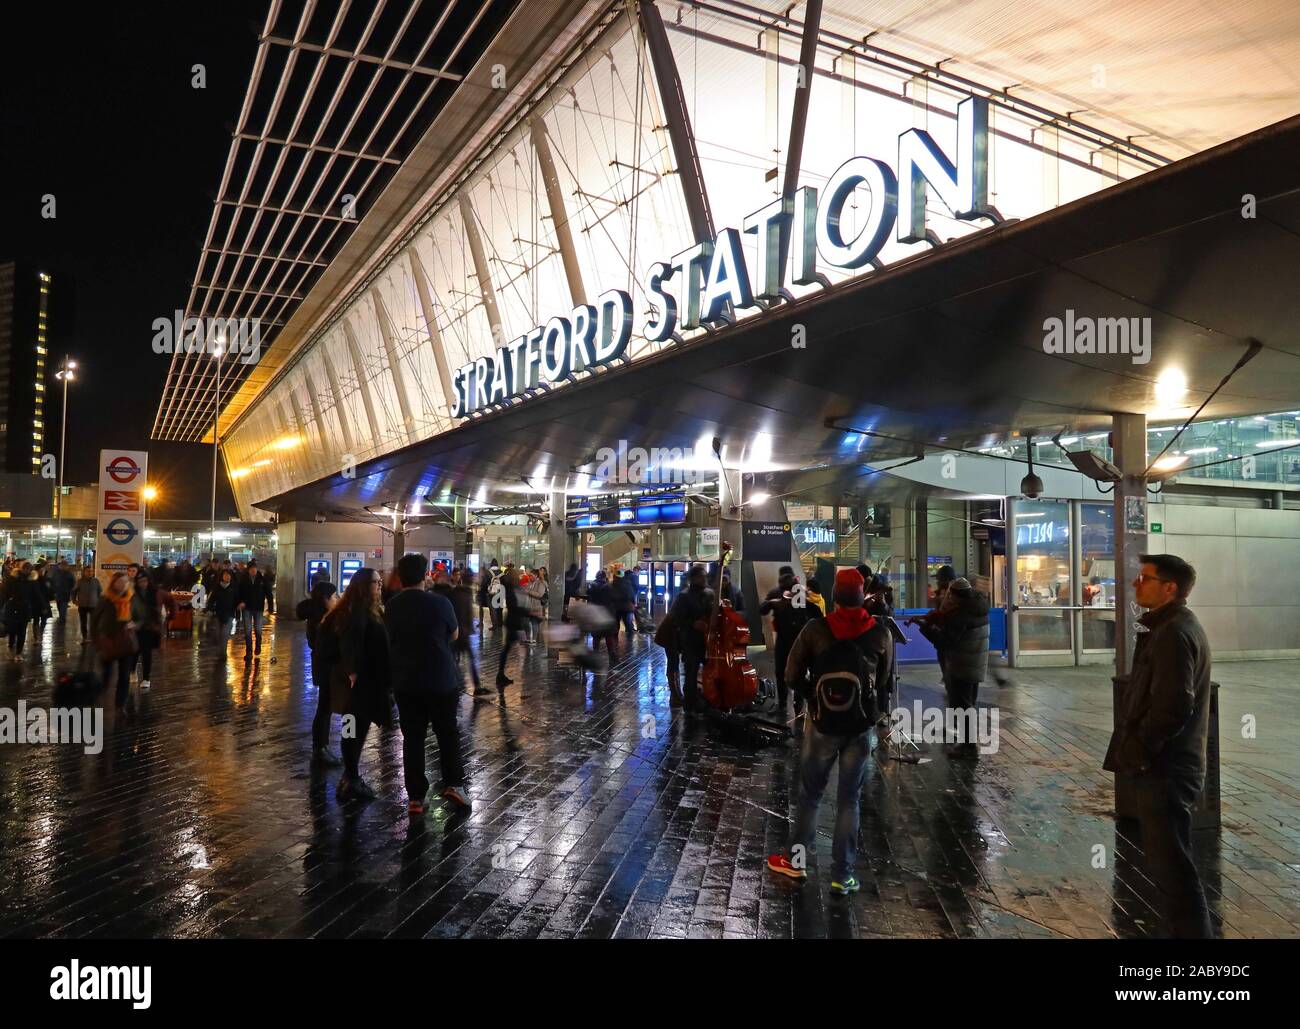 Gare régionale de Stratford et gare internationale de Stratford, Stratford City, Olympic Park, Montfichet Rd, Londres, Angleterre, Royaume-Uni, E20 1 EJ Banque D'Images